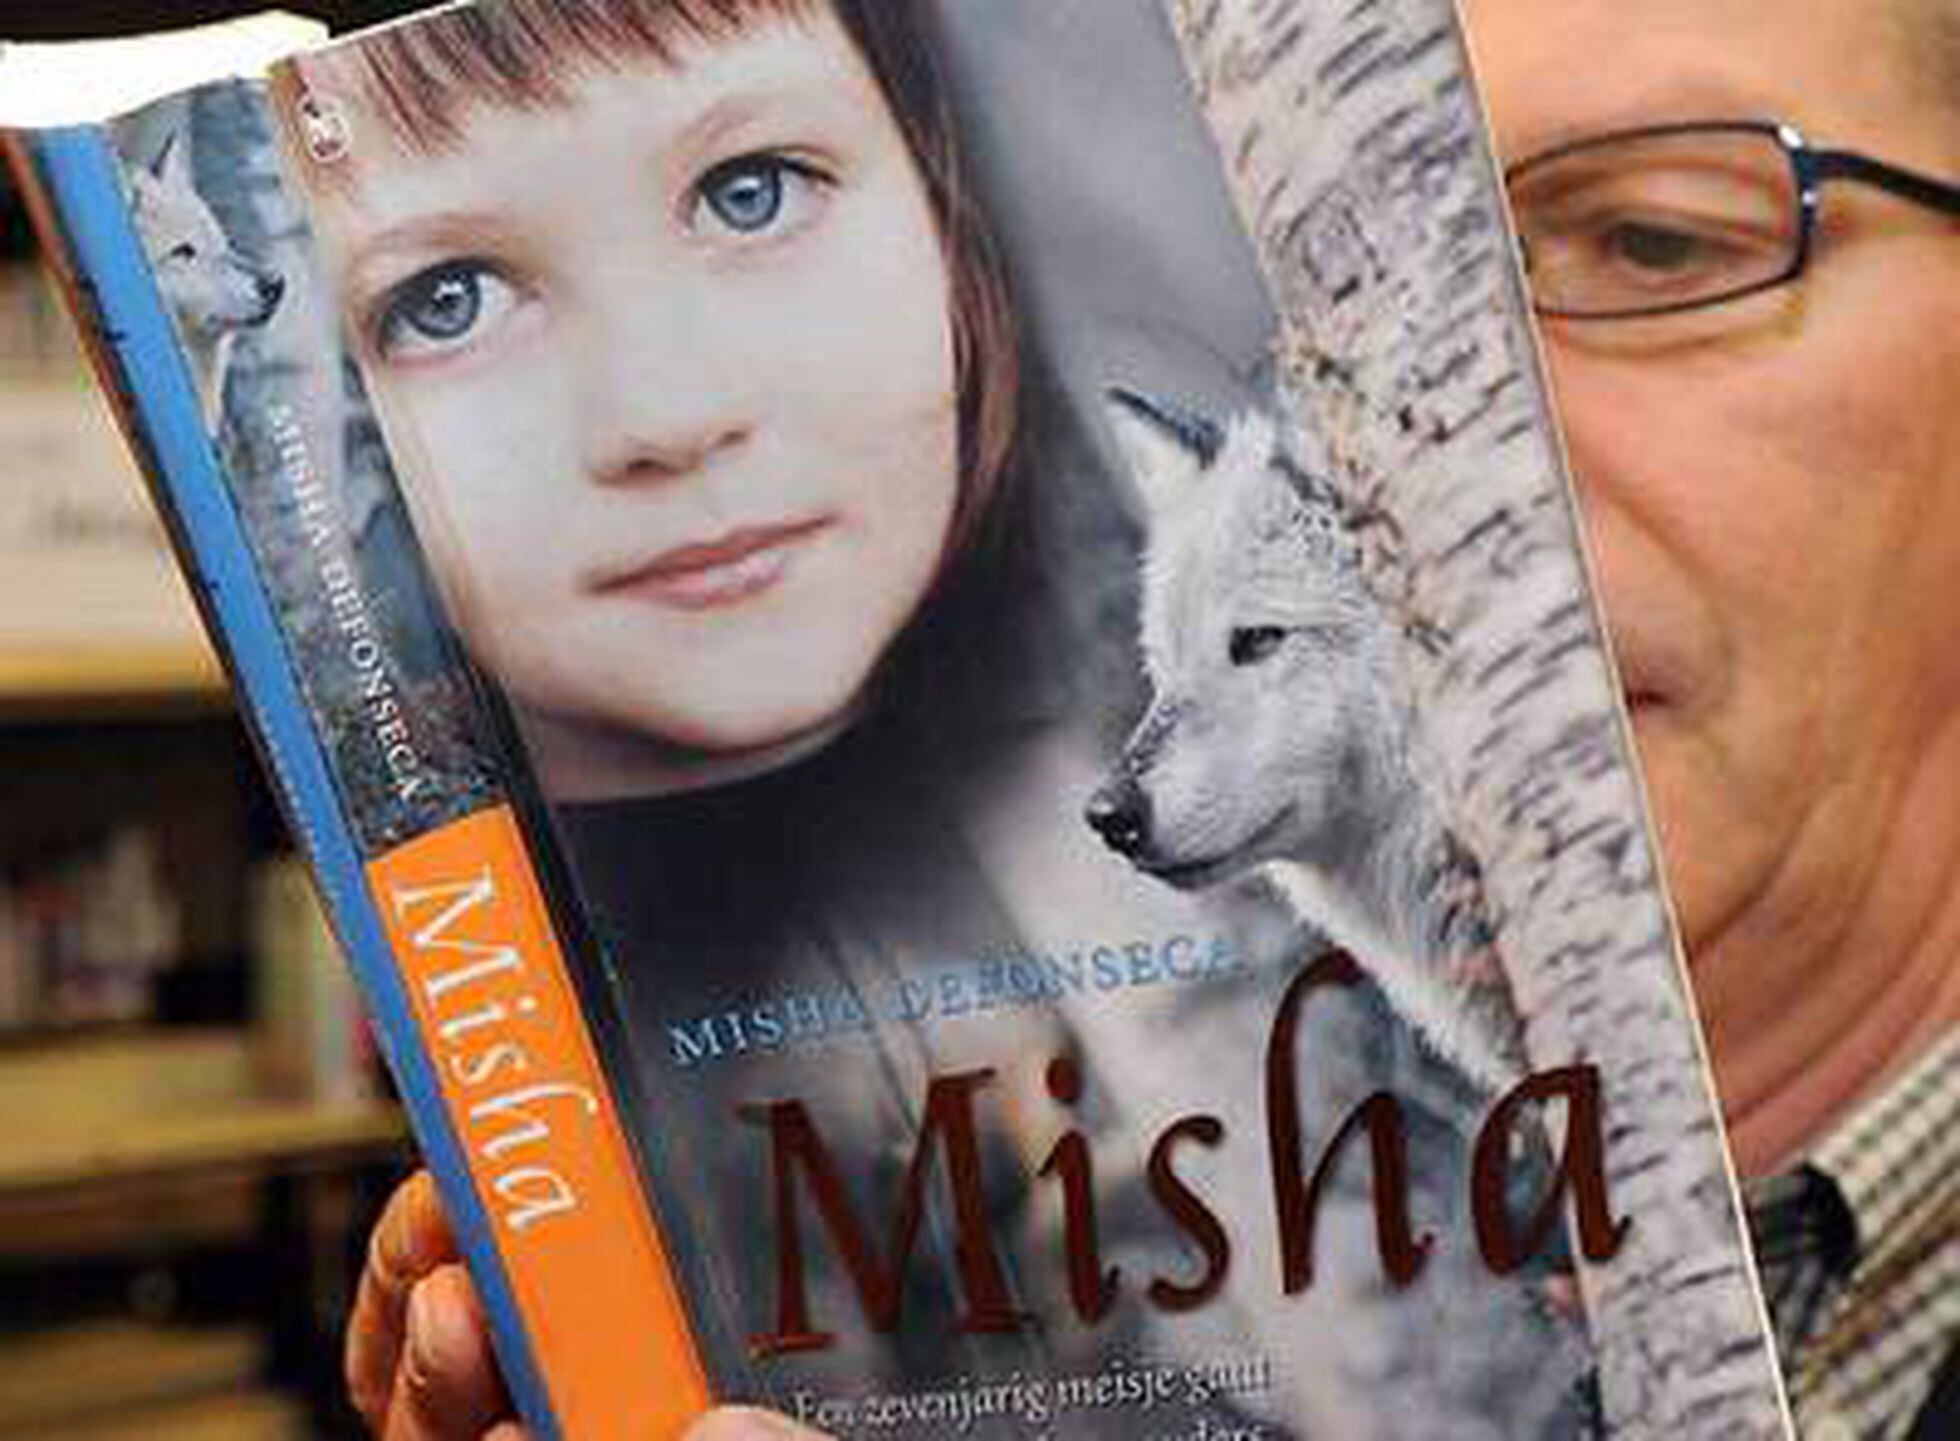 La vida de Misha con los lobos es una gran mentira | Cultura | EL PAÍS